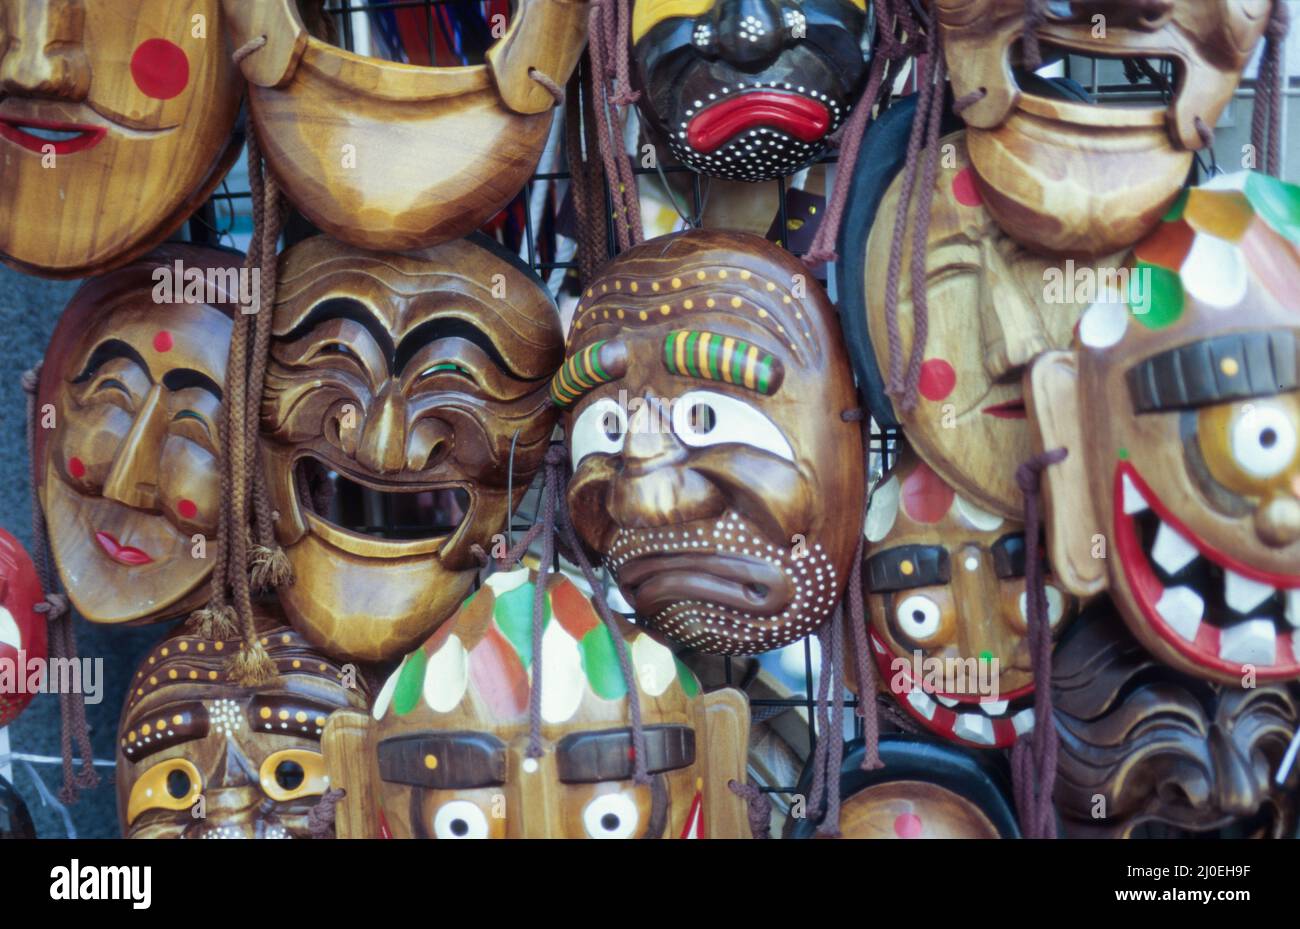 Stand mit Repliken traditioneller Holzmasken, wie sie in Korea bei bestimmten Festen getragen wurden - market stall with replicas of wooden masks that were traditionally worn at certain Korean events. Stock Photo